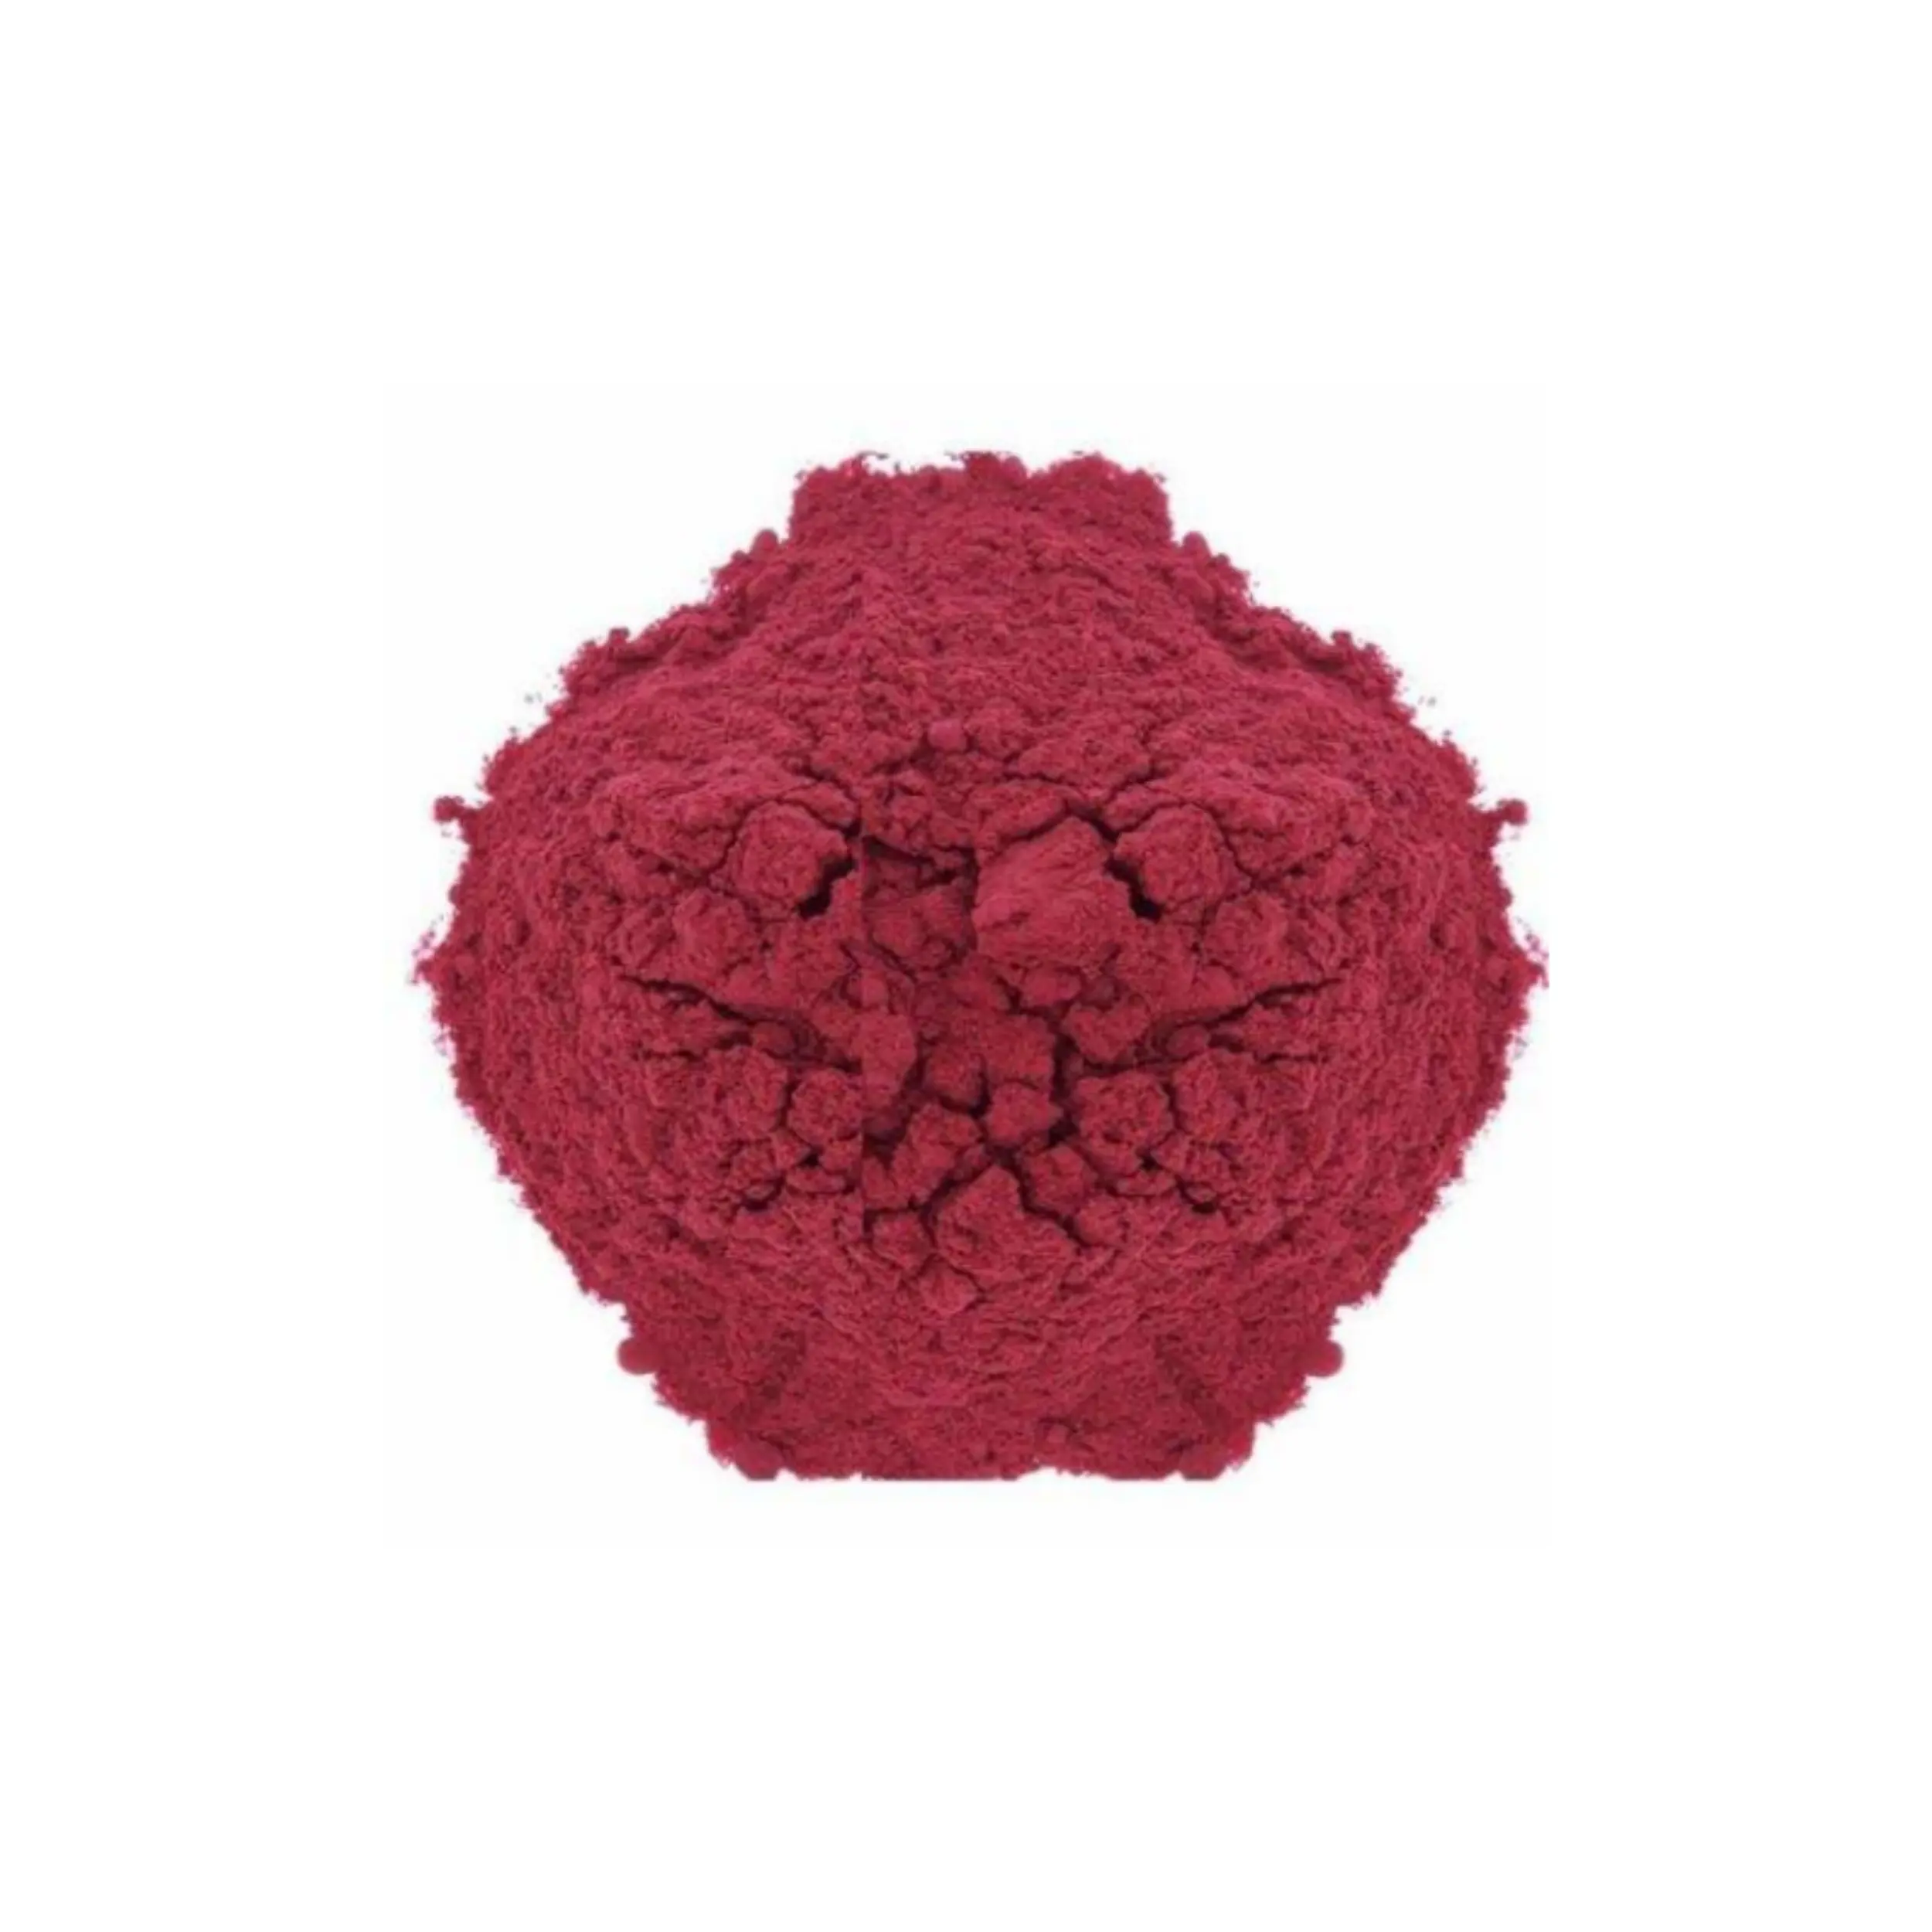 Vente en gros de nouvelles innovations solvant rouge 23 colorant cas 85-86-9 qui peut être utilisé pour une variété de colorants de résine